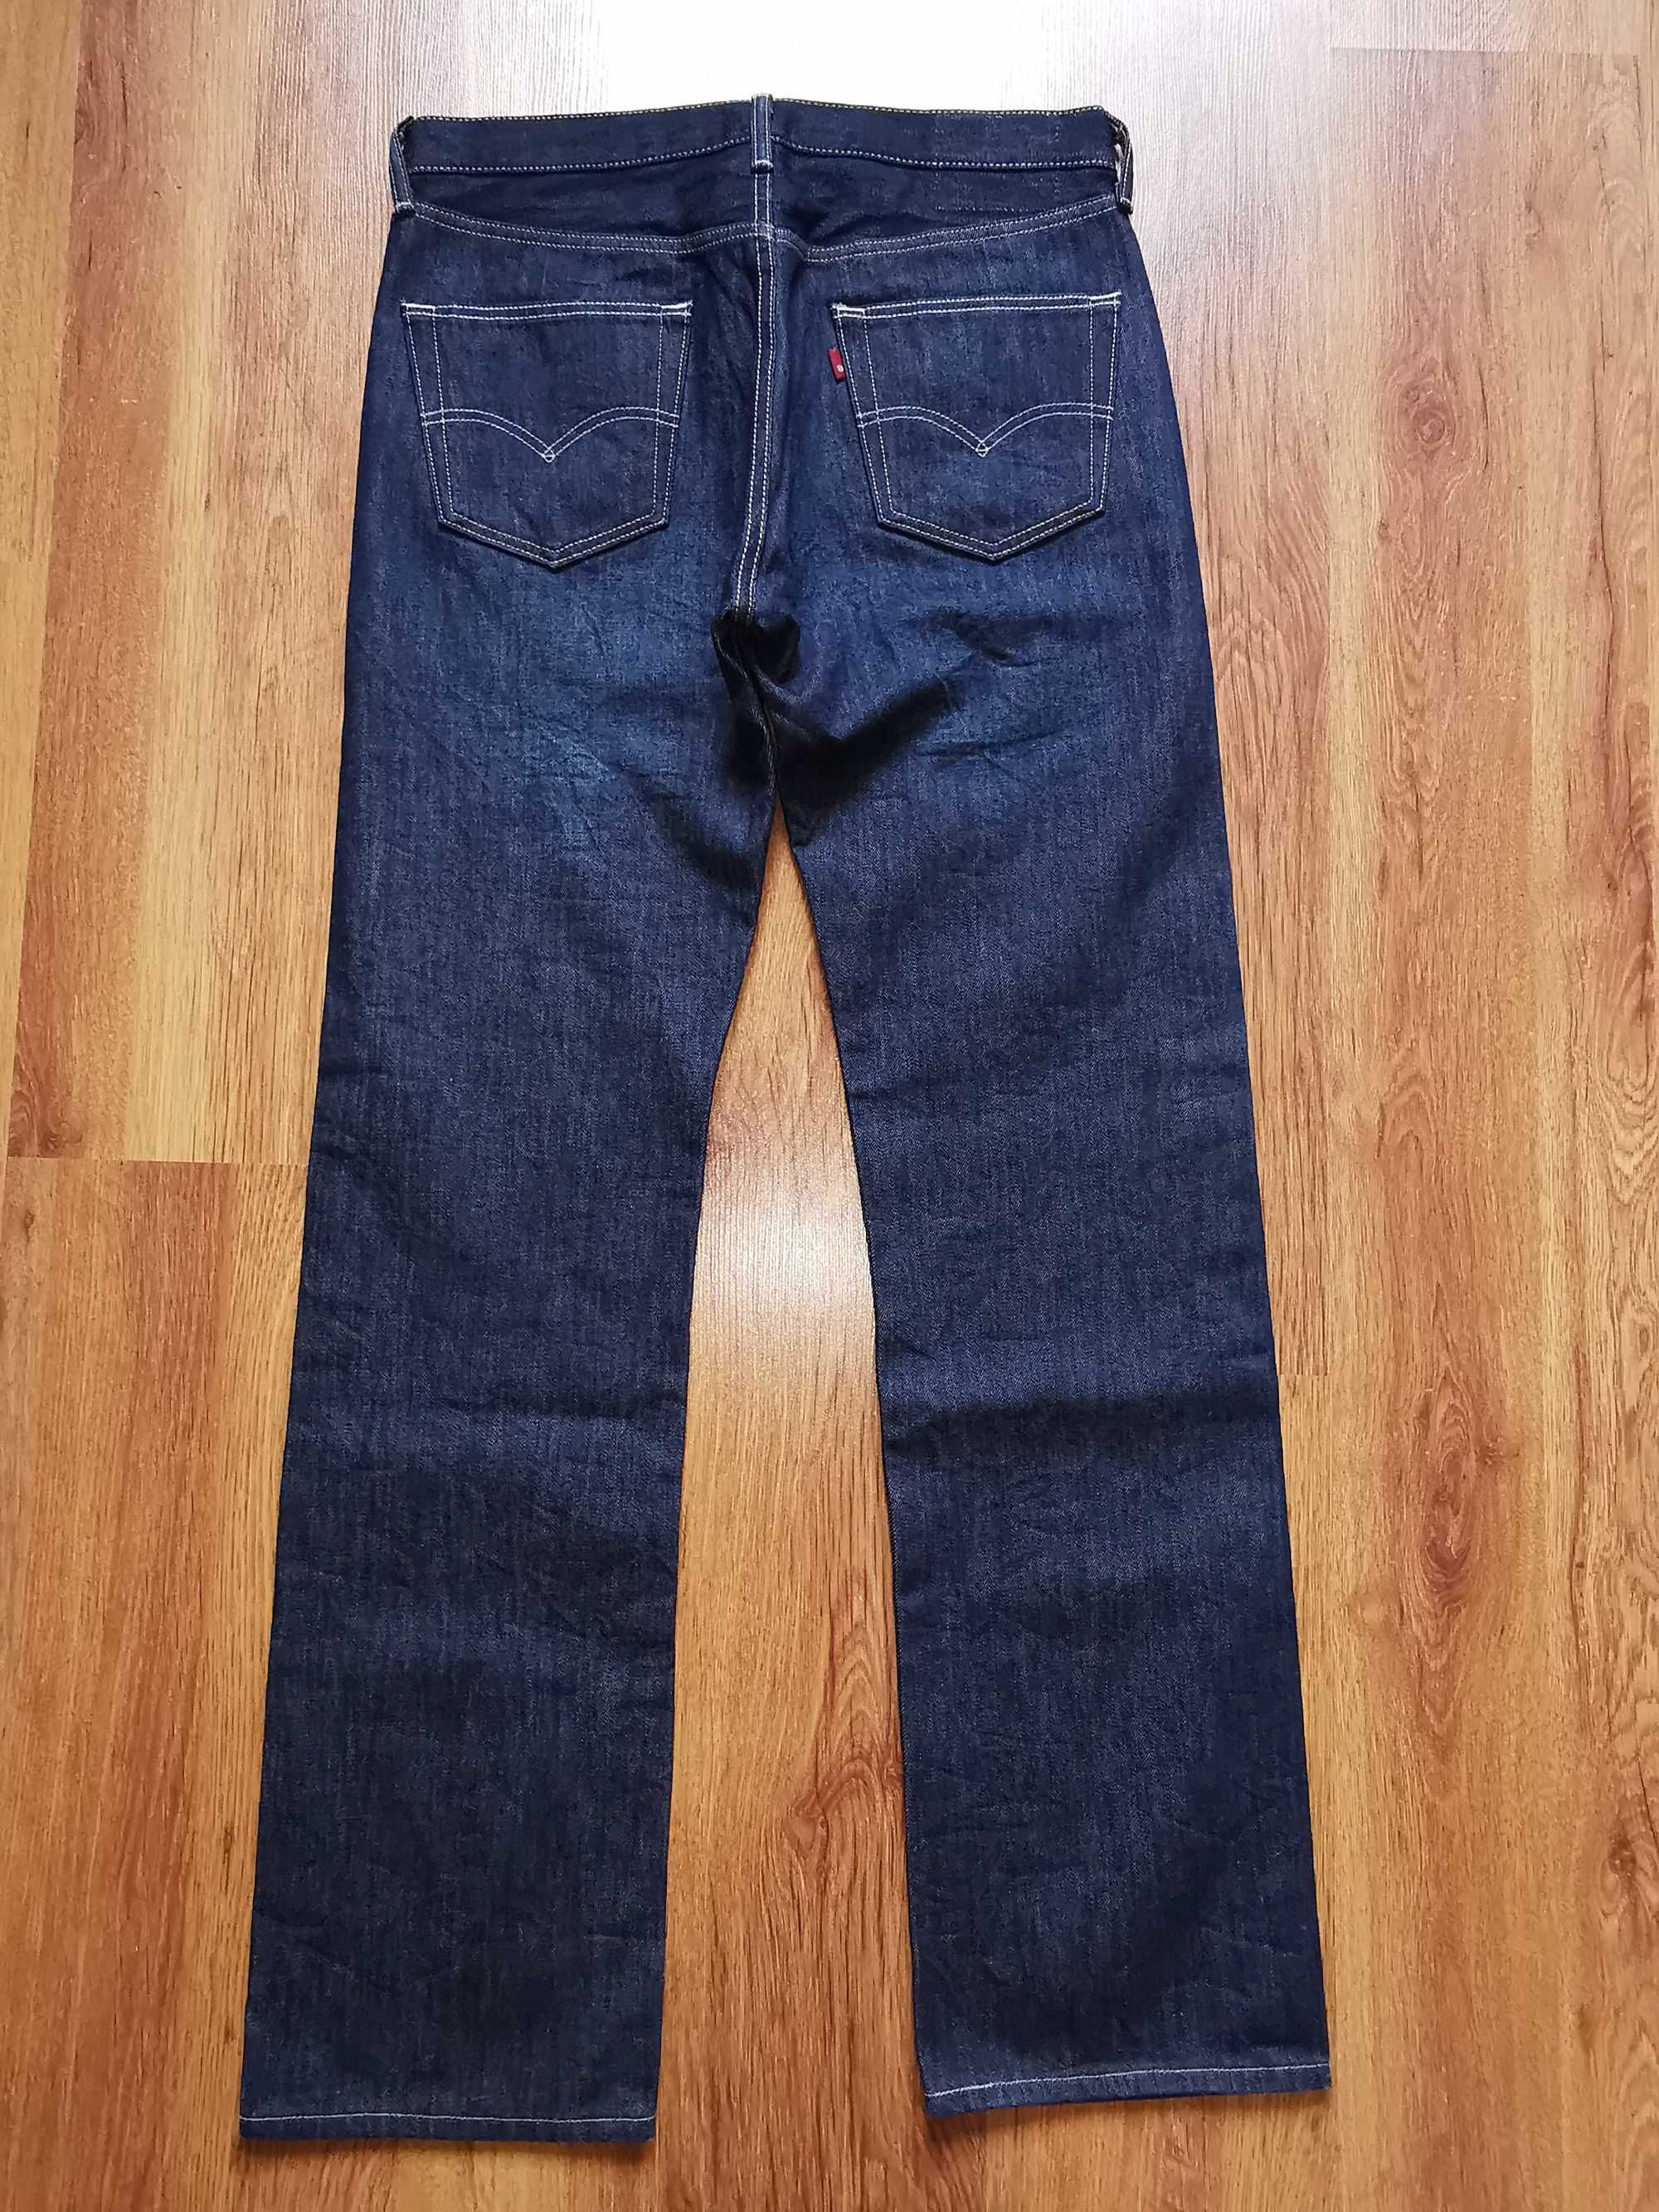 LEVIS 501 W34 L34 oryginalne jeansy LEVI'S NOWE